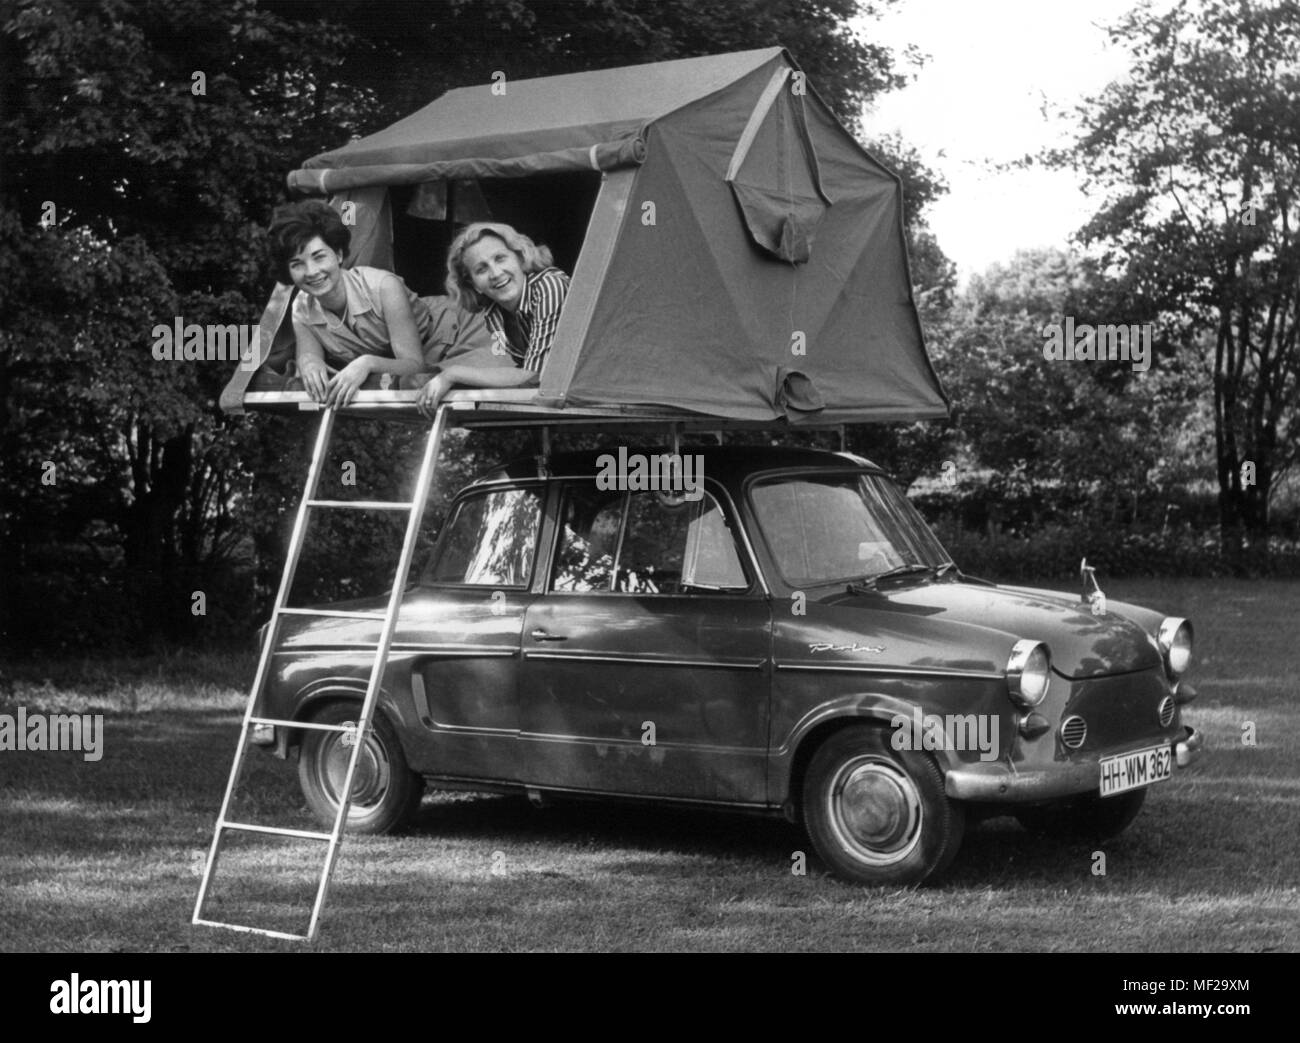 Deux jeunes femmes se trouvent dans un camping car tente de toit monté sur  une NSU prince. La tente de camping sur le toit de voiture a été présentée  le 16.06.1966 à